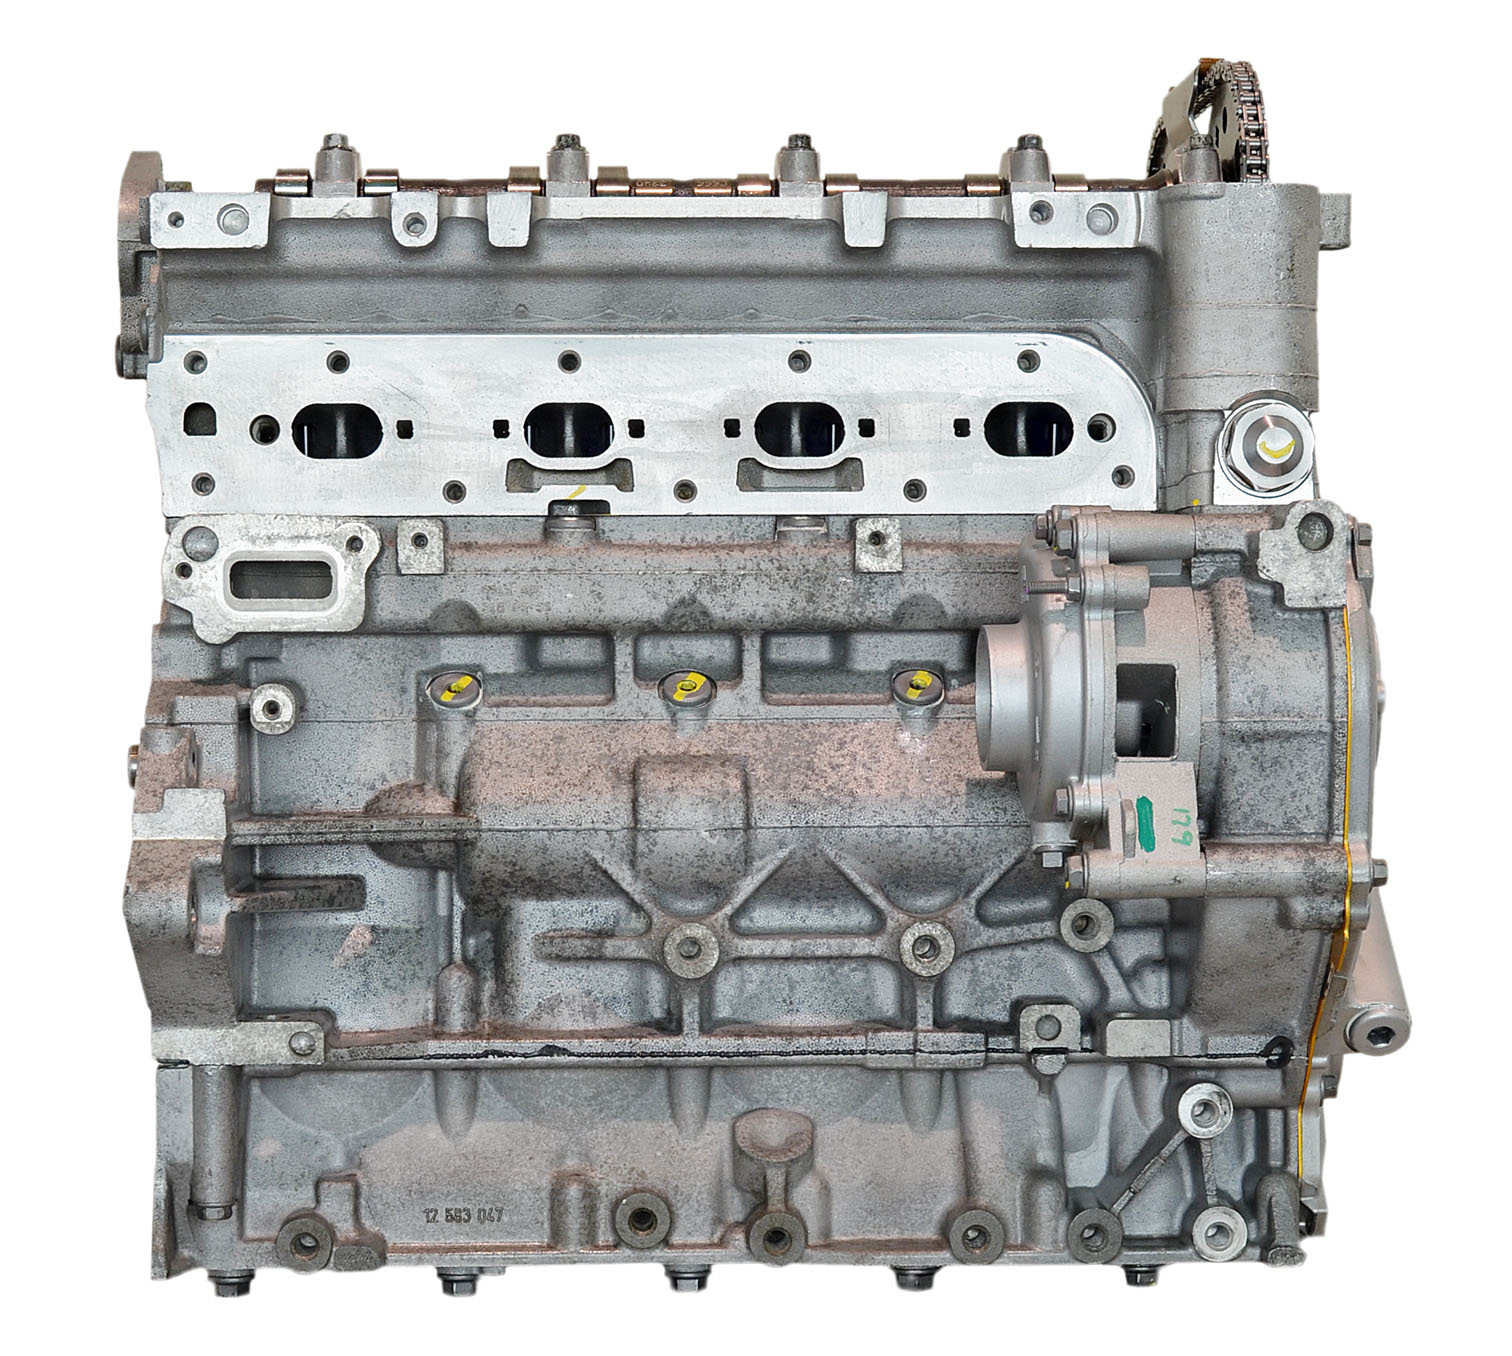 Chevy 2.2L Ecotec L61L4 Remanufactured Engine - 2002-2007